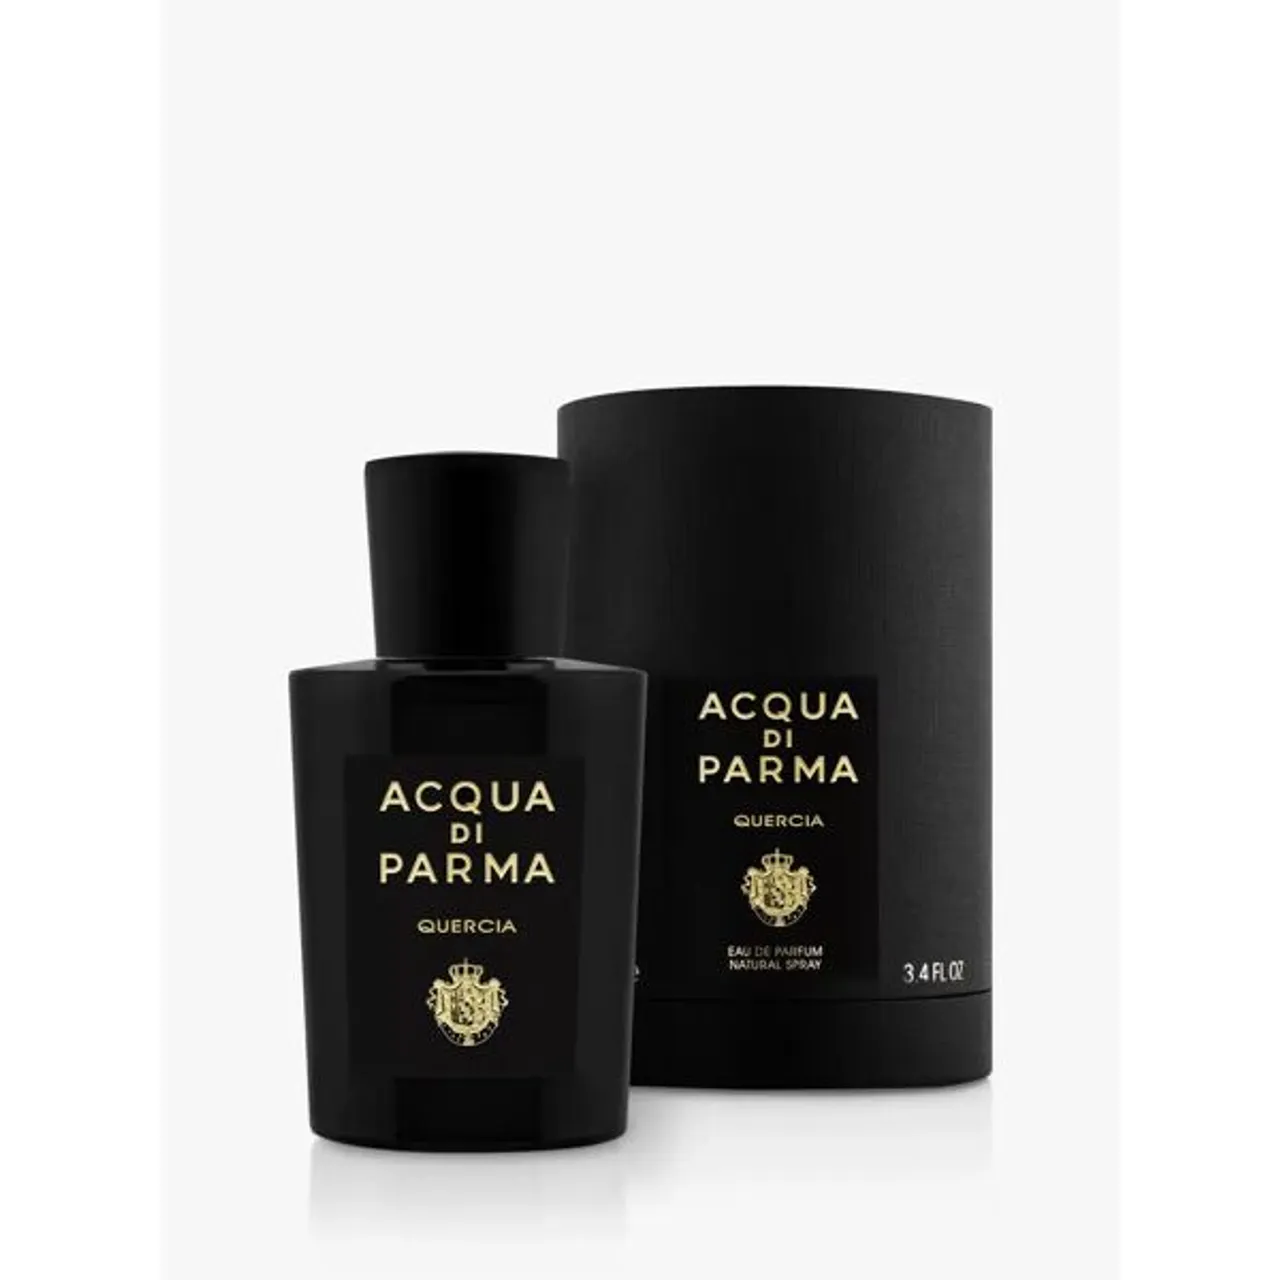 Acqua di Parma Quercia Eau de Parfum - Unisex - Size: 100ml